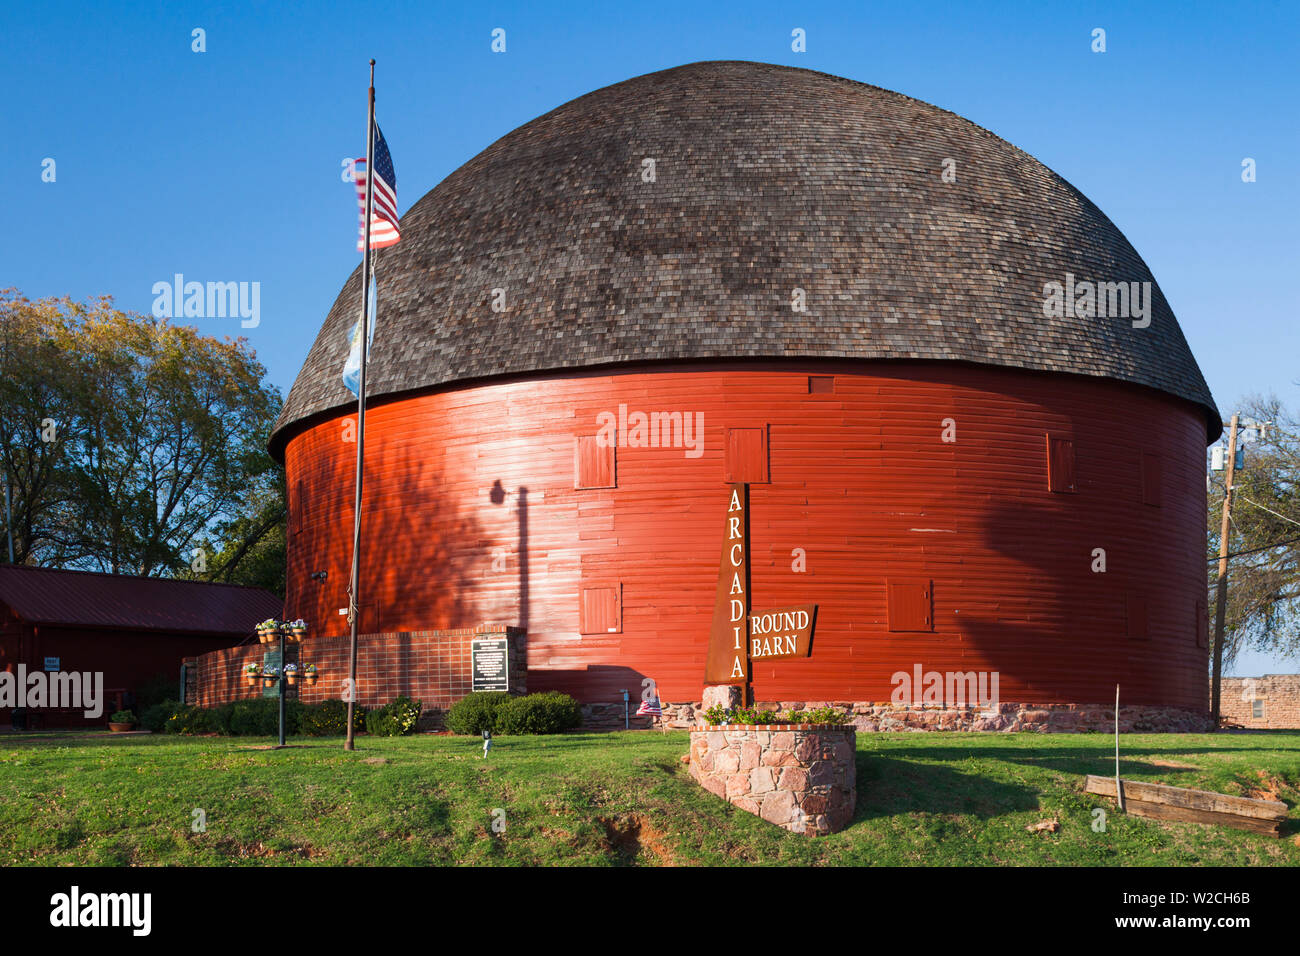 USA, Oklahoma, Arcadia, The Round Barn Stock Photo